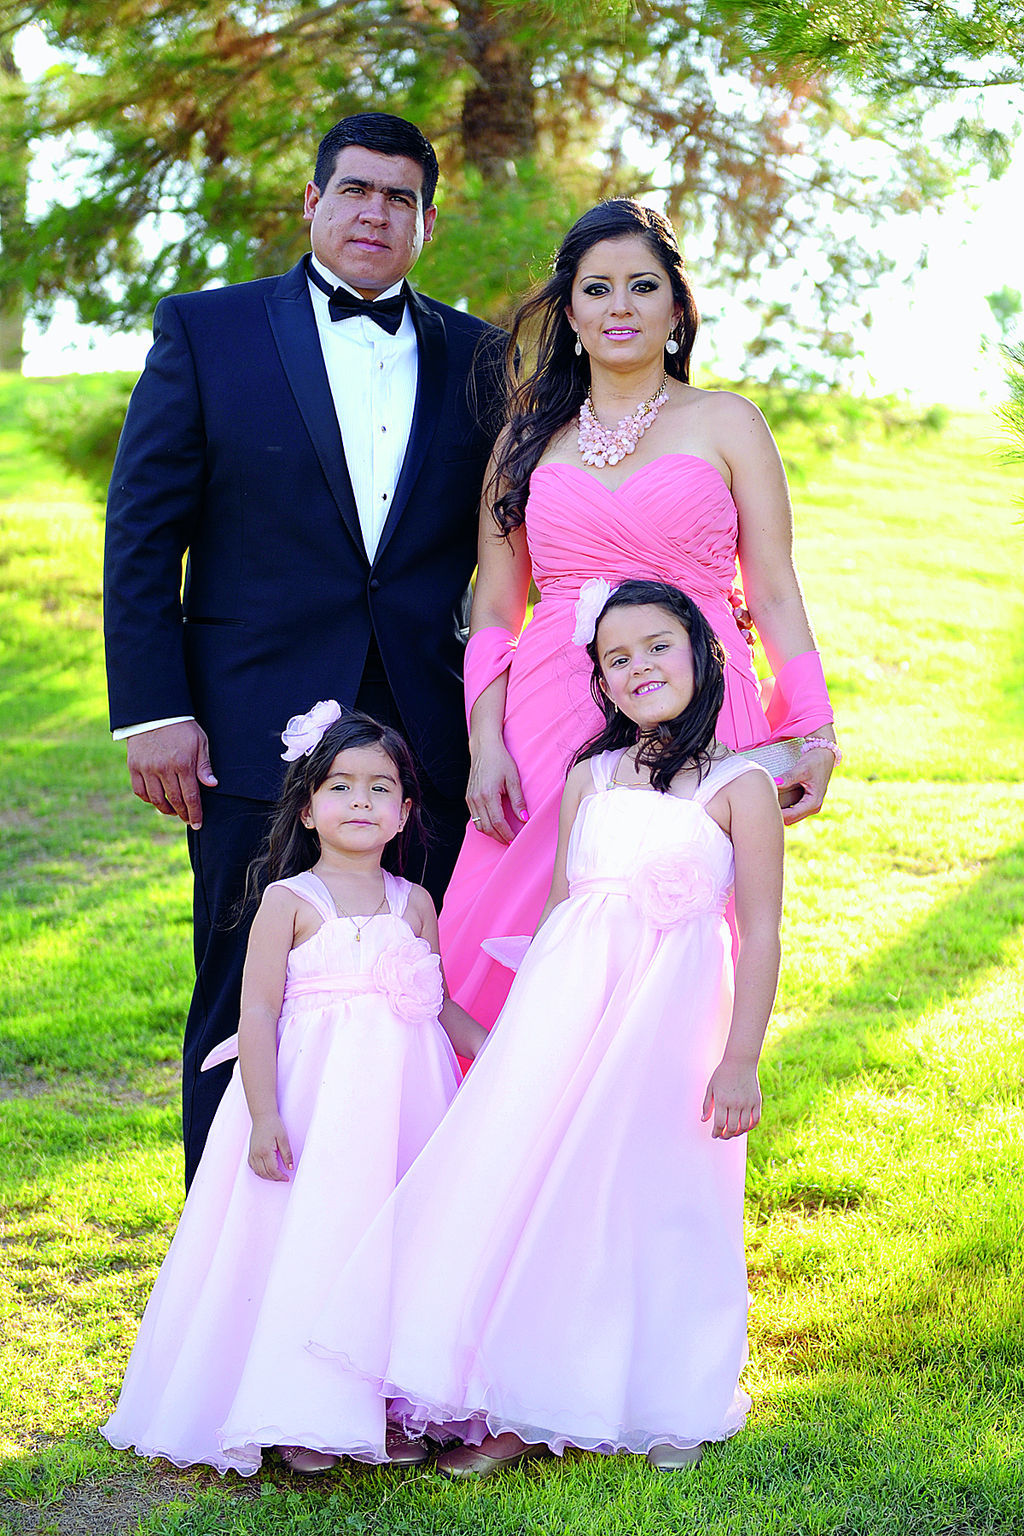   Vicente Molina y Vanessa Mazzoco de Molina con sus hijas, Jimena y María Emilia.
